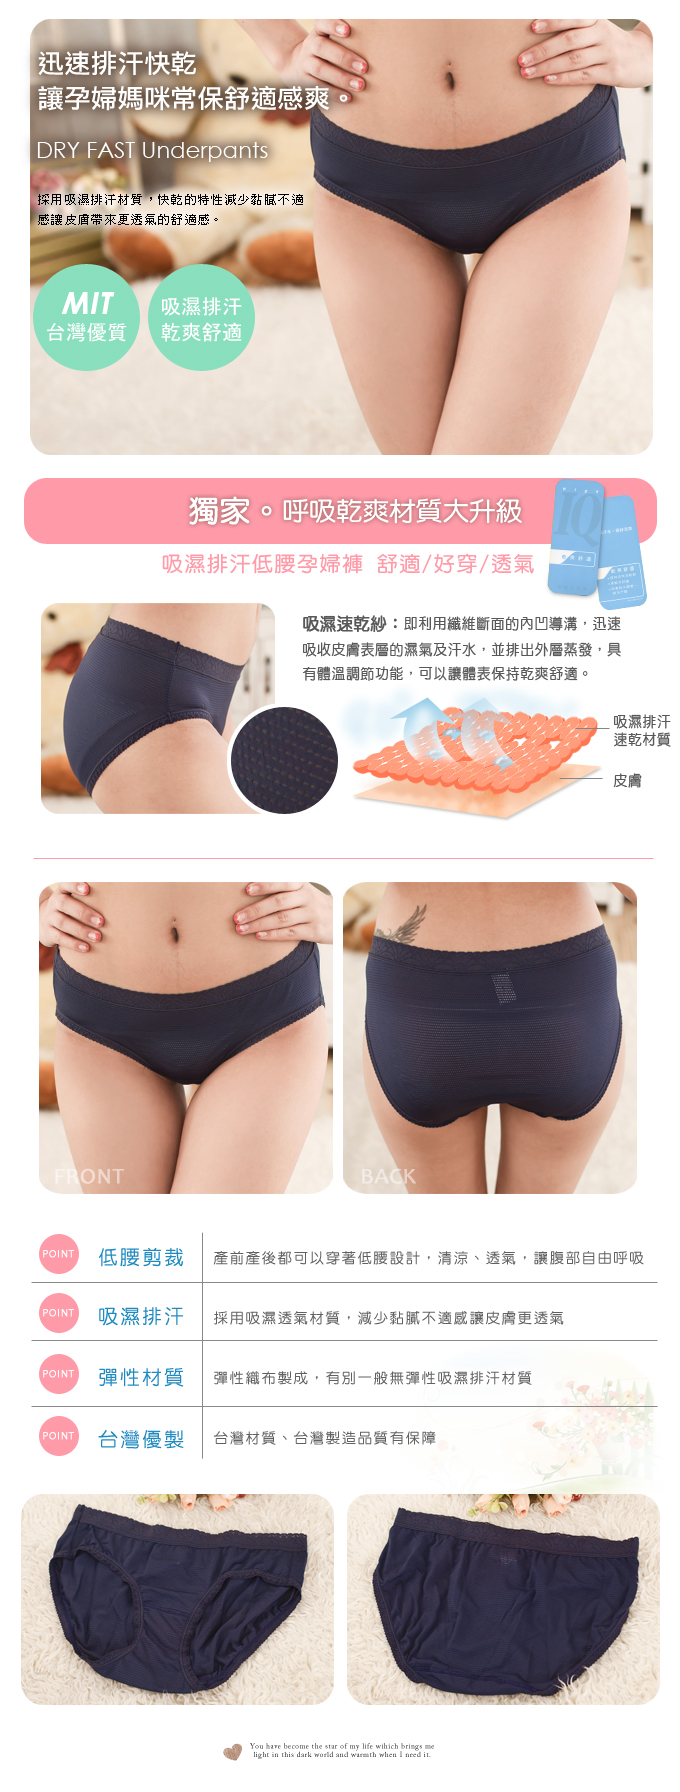 【露娜斯】吸濕排汗。蕾絲俏臀低腰透氣孕婦褲2件組【深藍】台灣製P1027